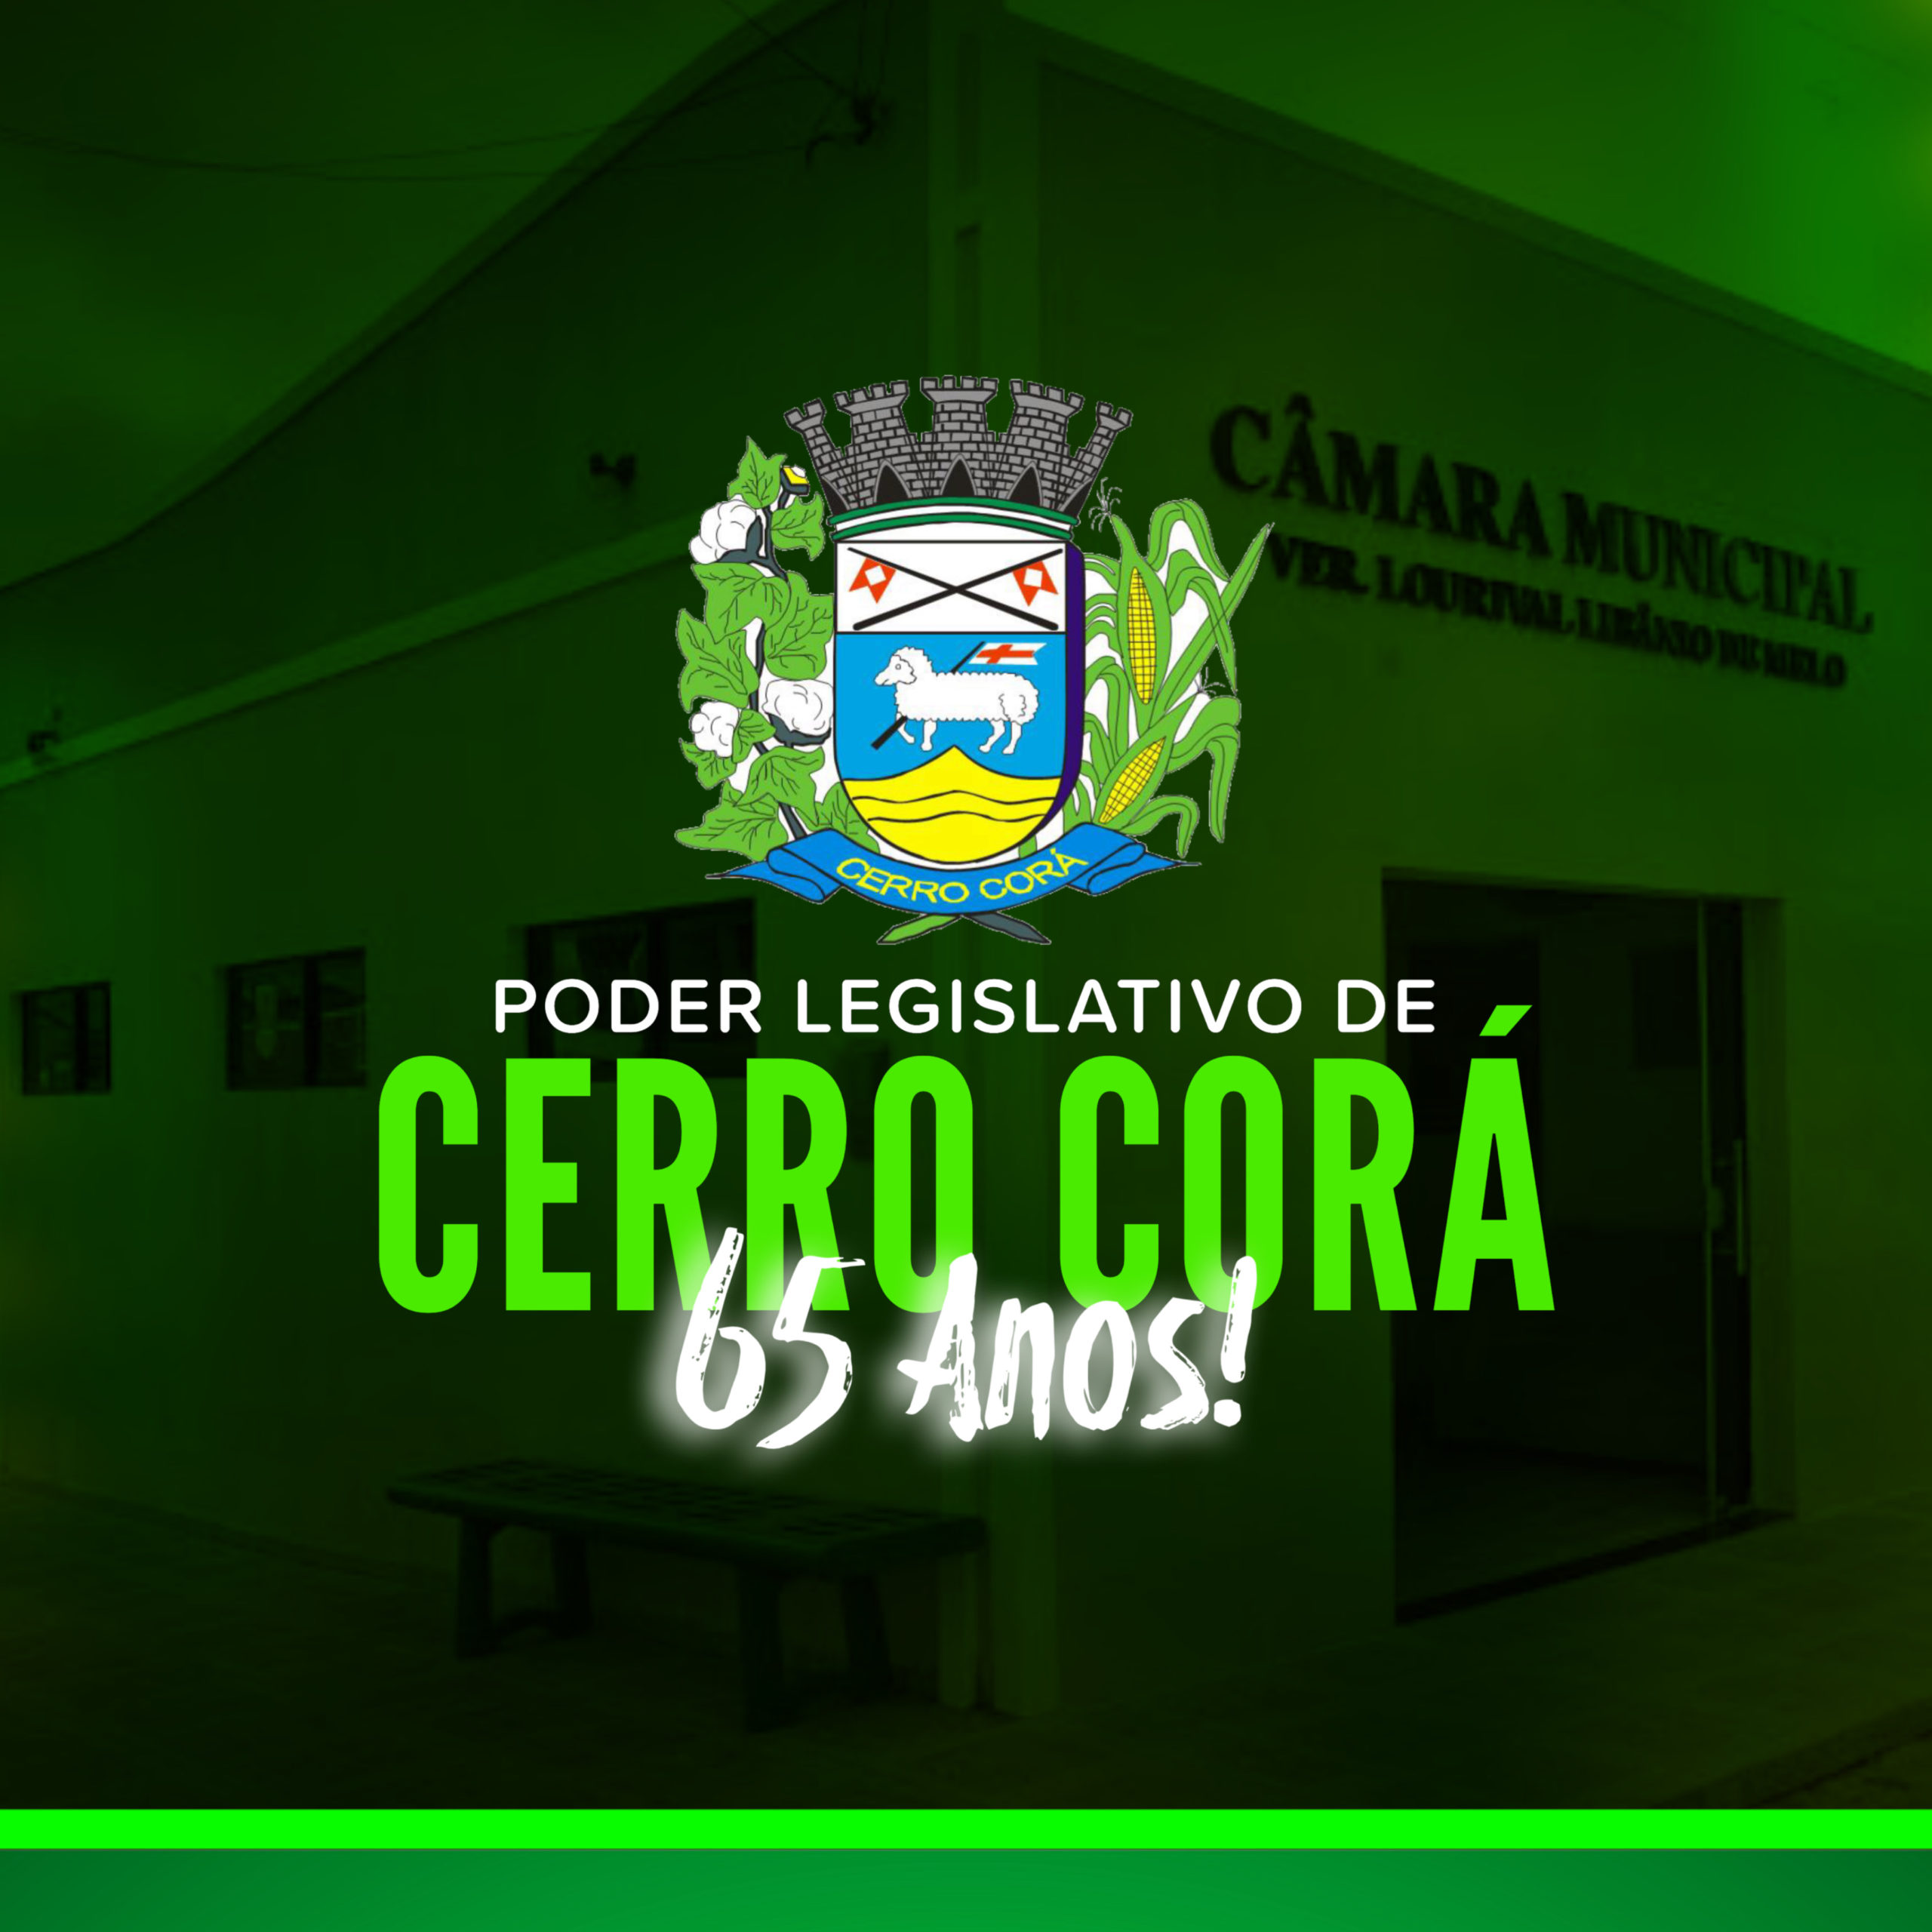 Câmara de vereadores de Cerro Corá comemora seus 65 anos